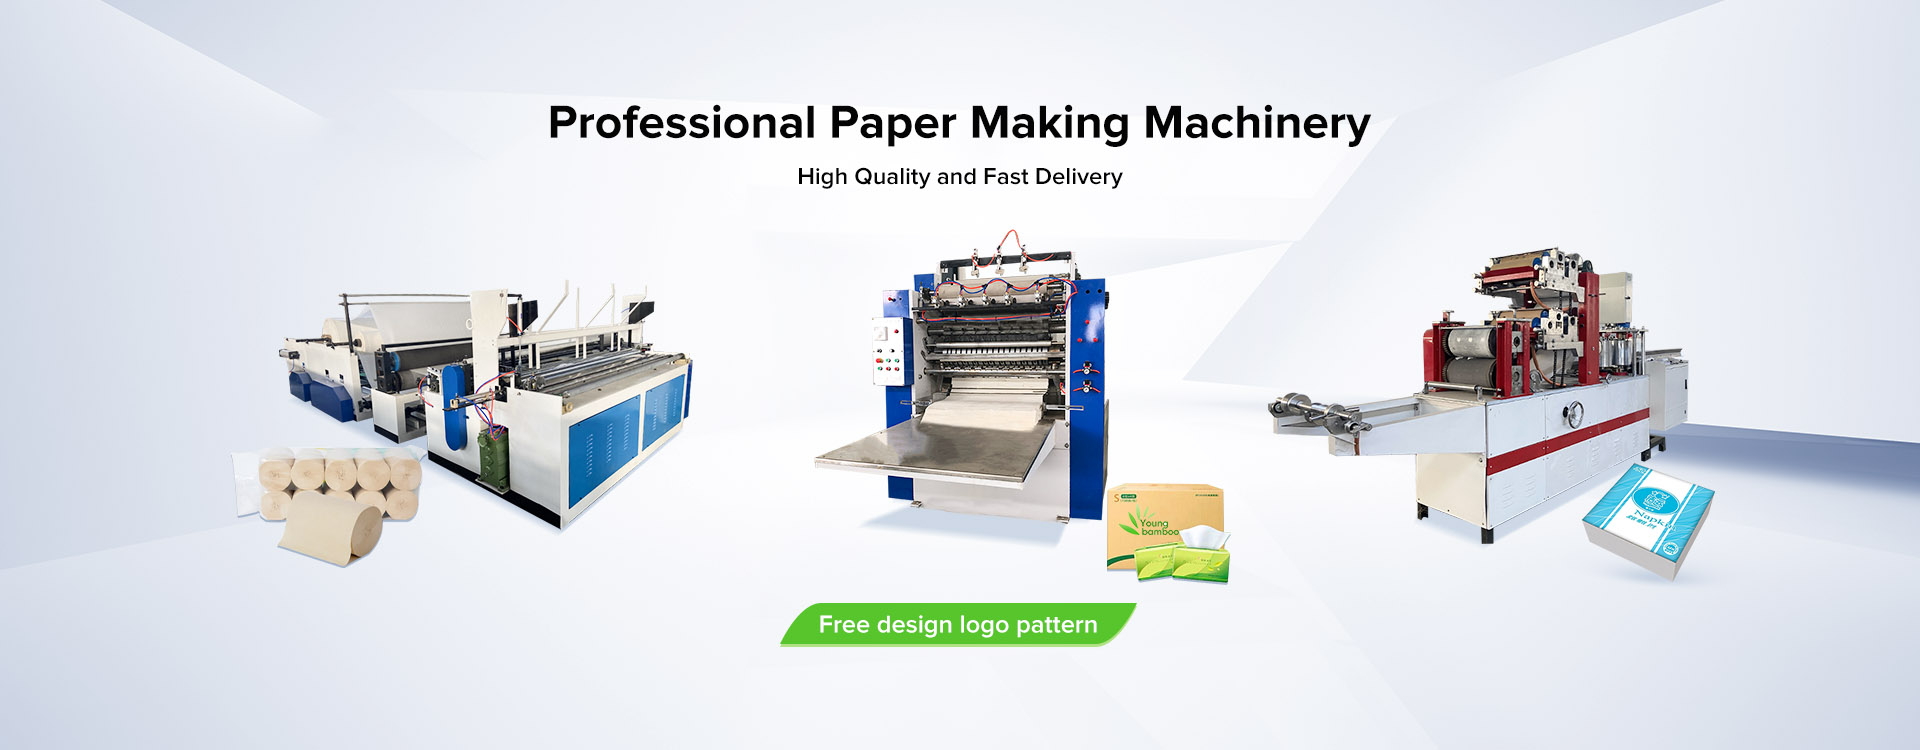 دستگاه تولید کاغذ